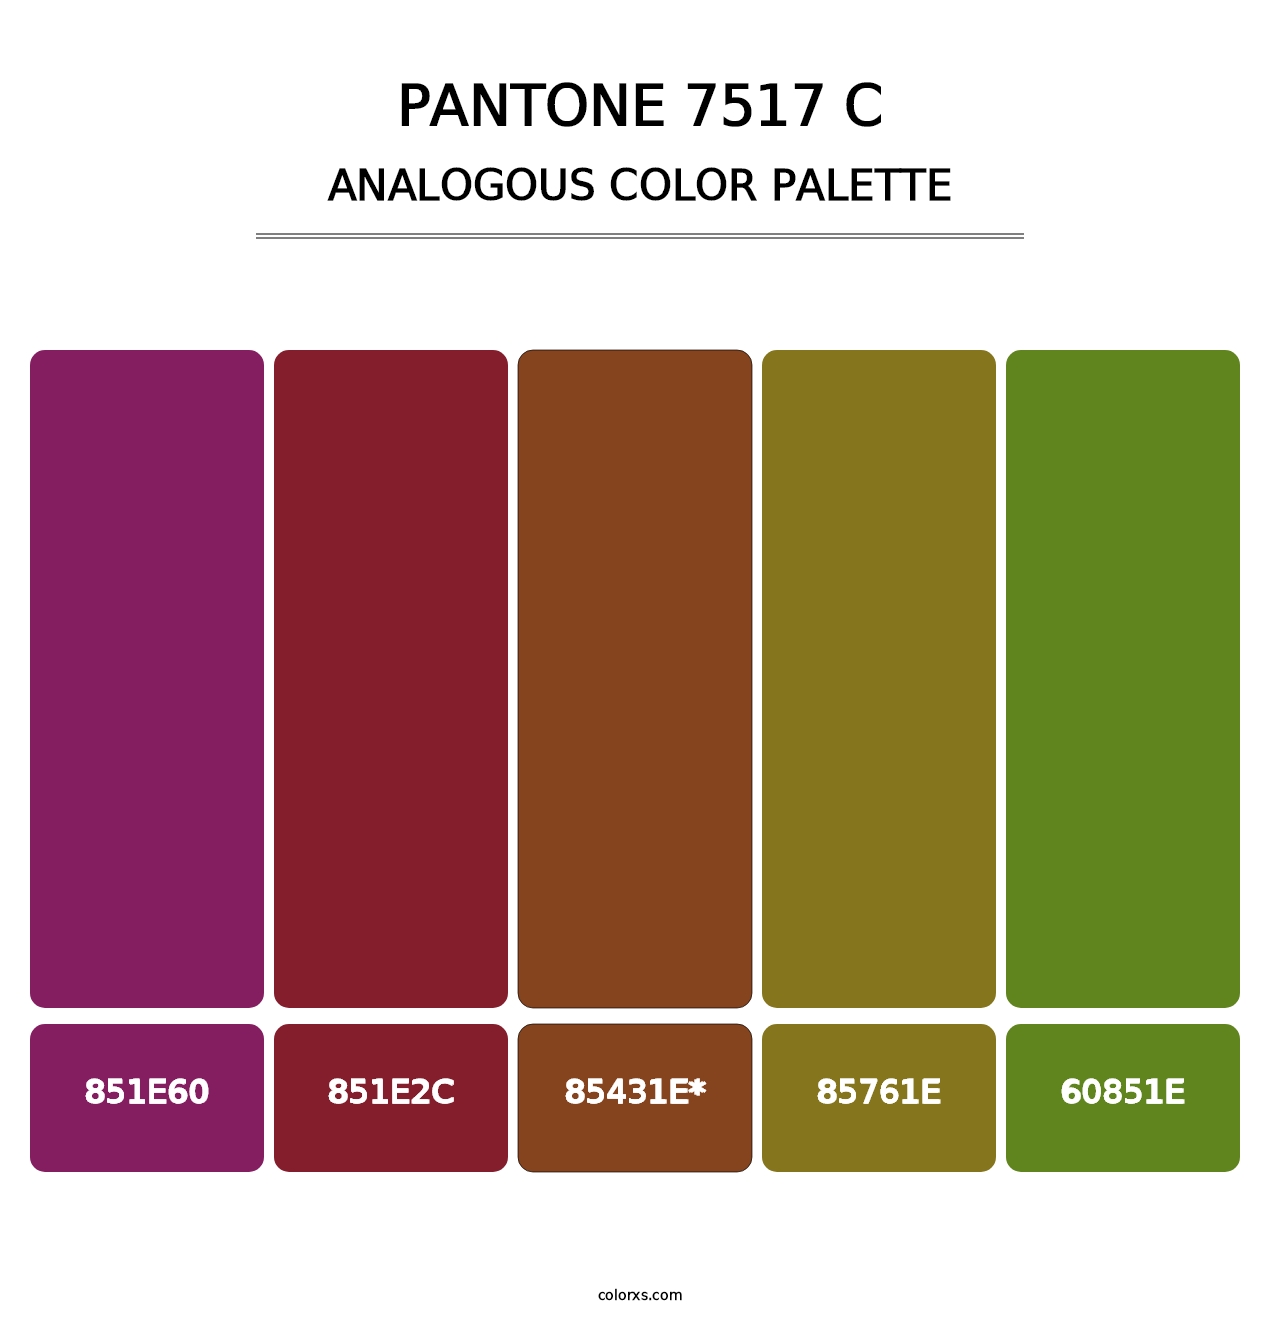 PANTONE 7517 C - Analogous Color Palette